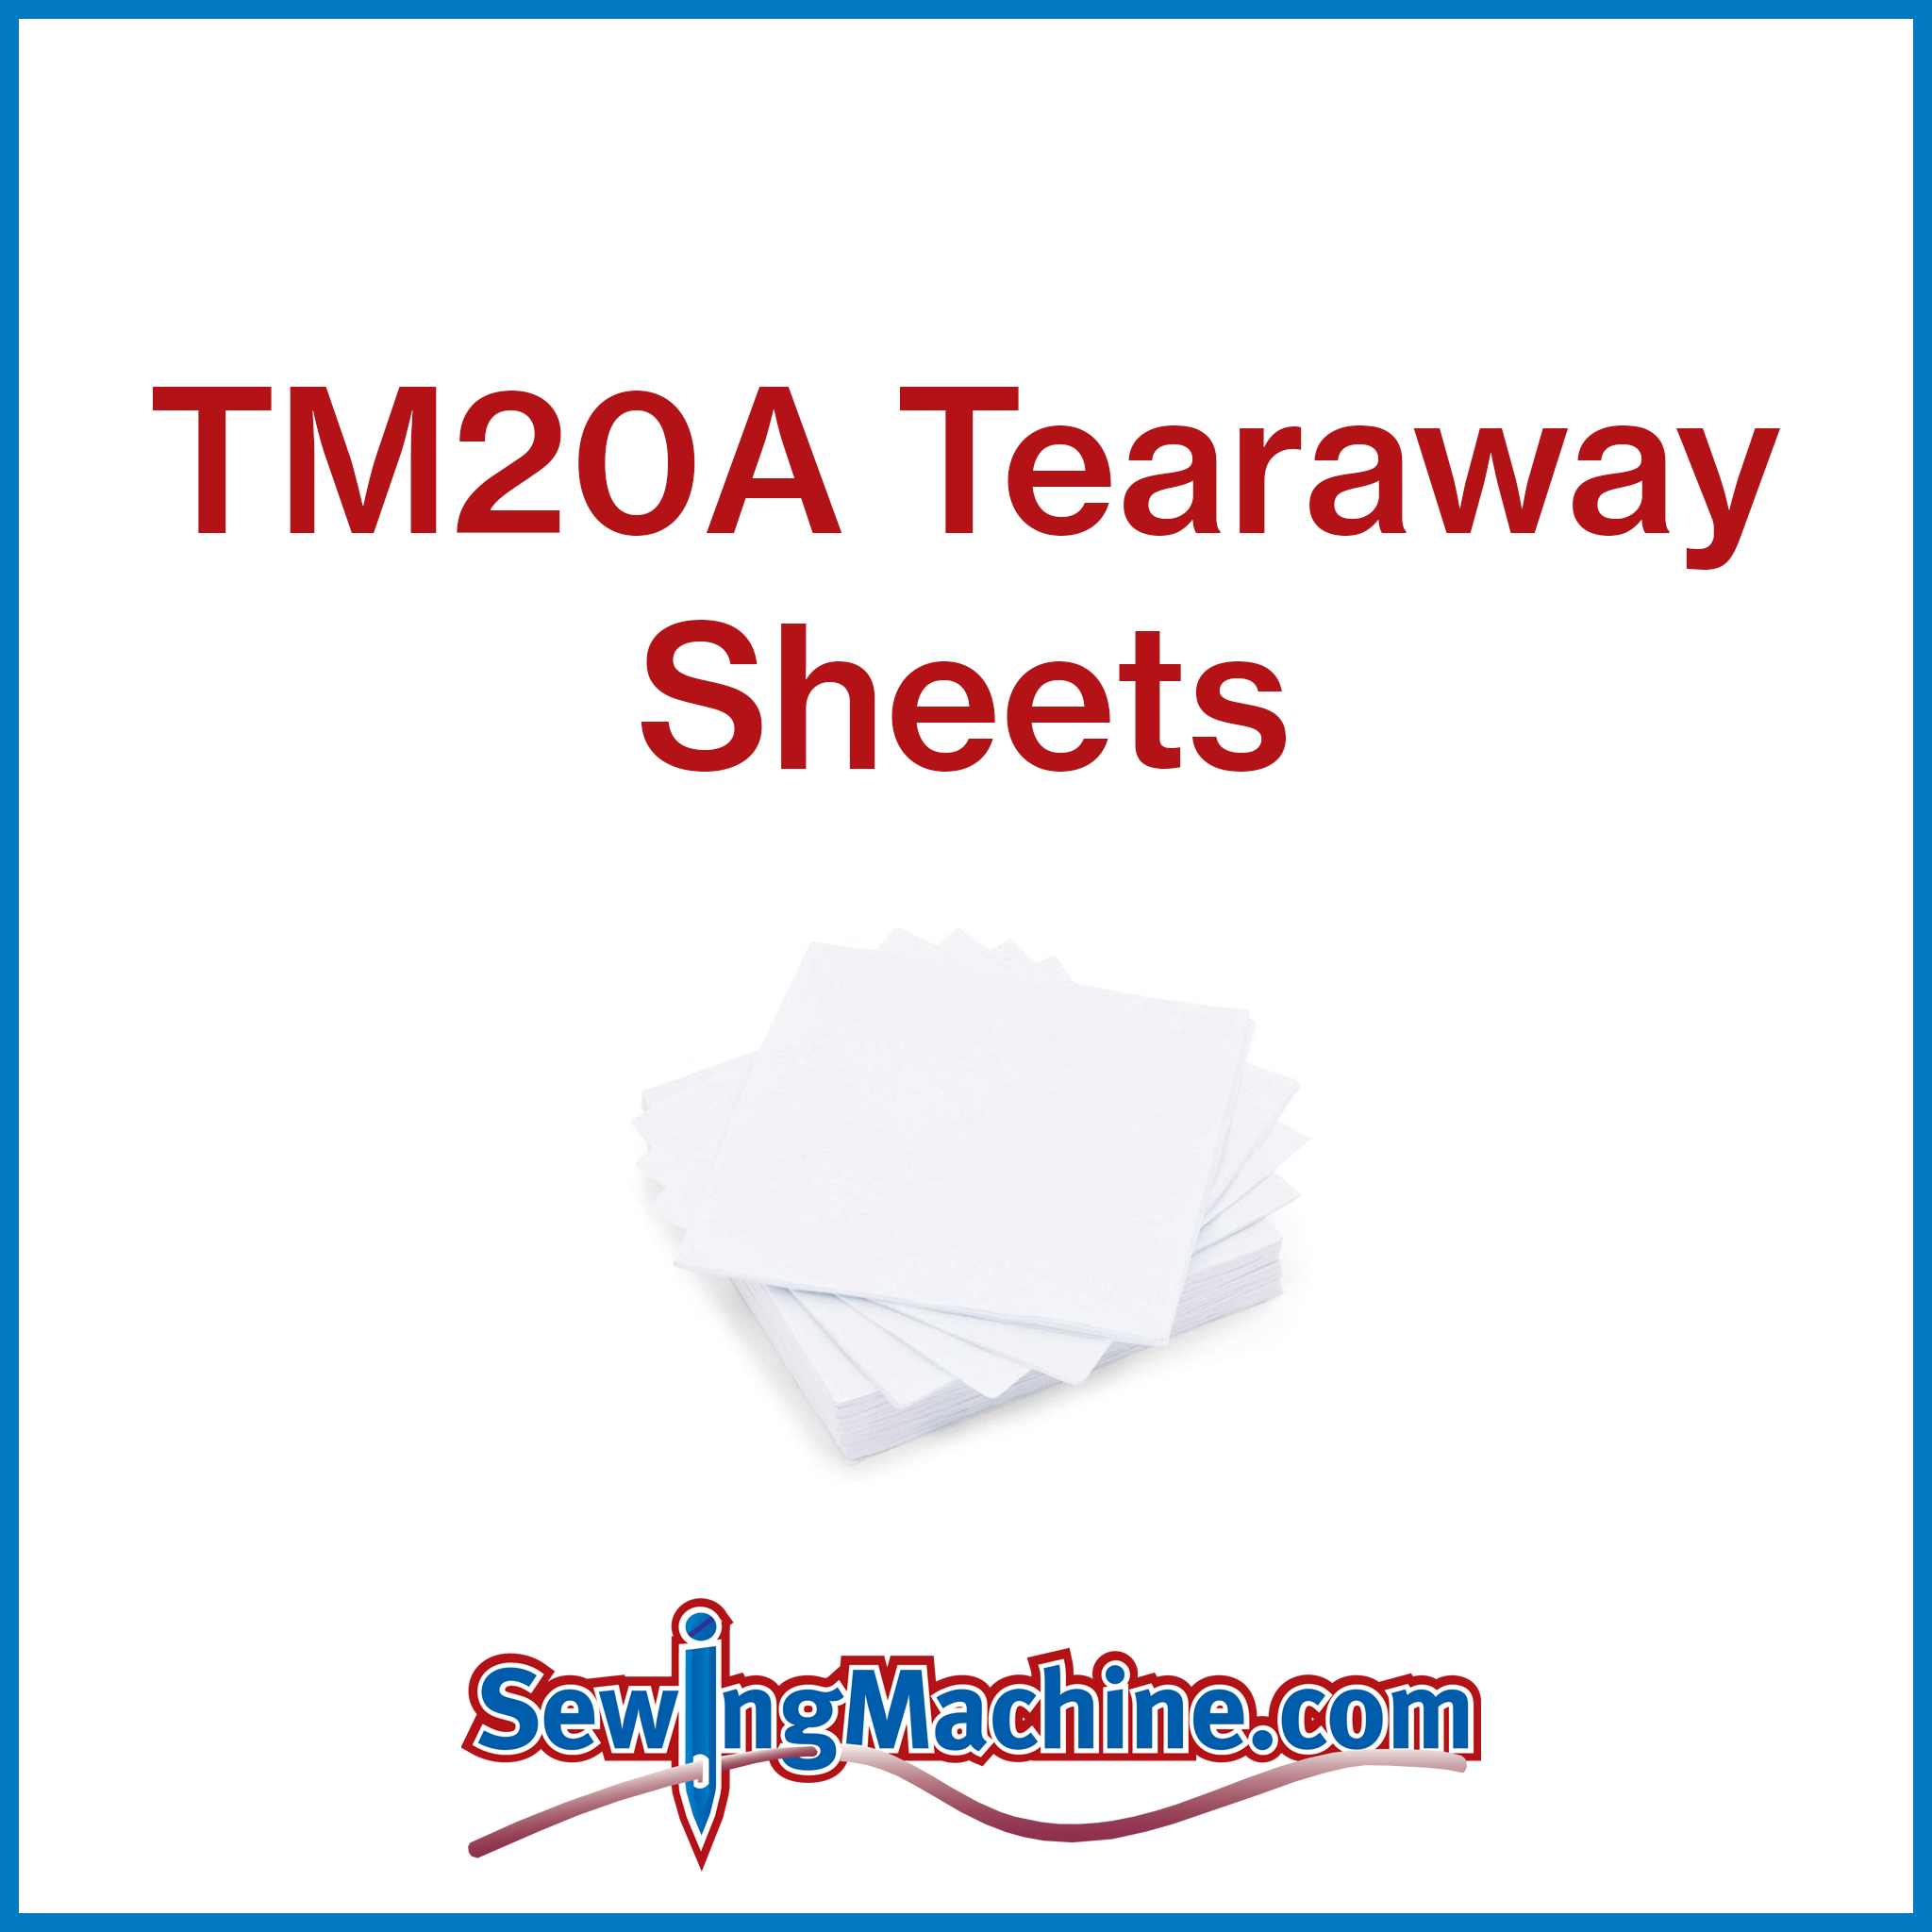 TM20A Tearaway 2oz Sheets